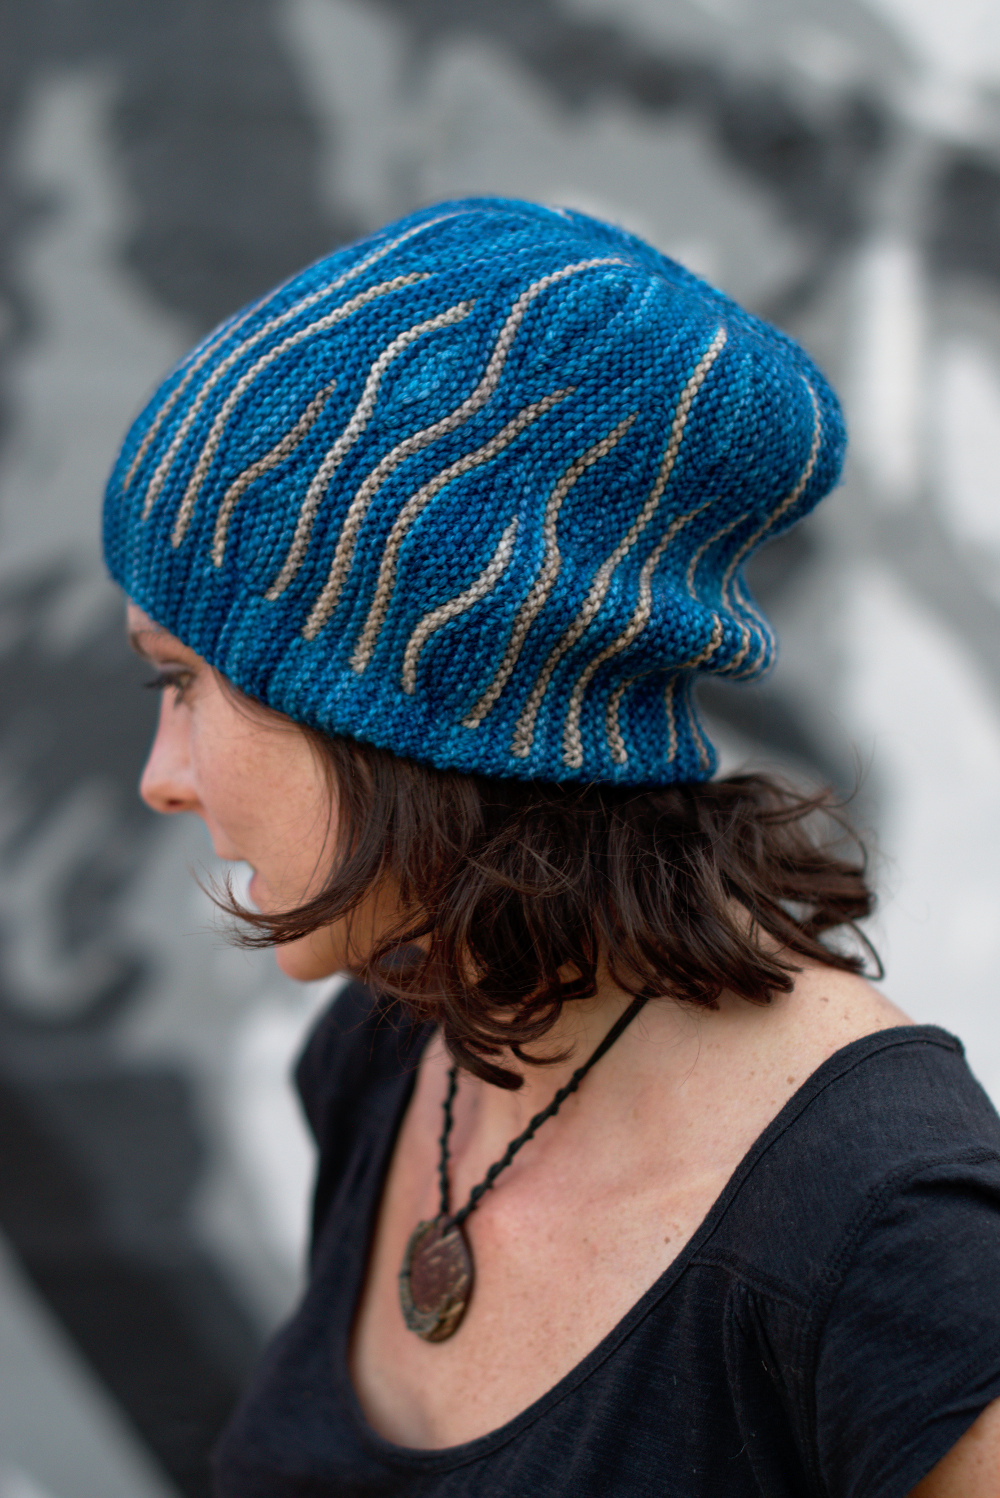 Katara sideways knit short row colourwork hand knitted Hat pattern